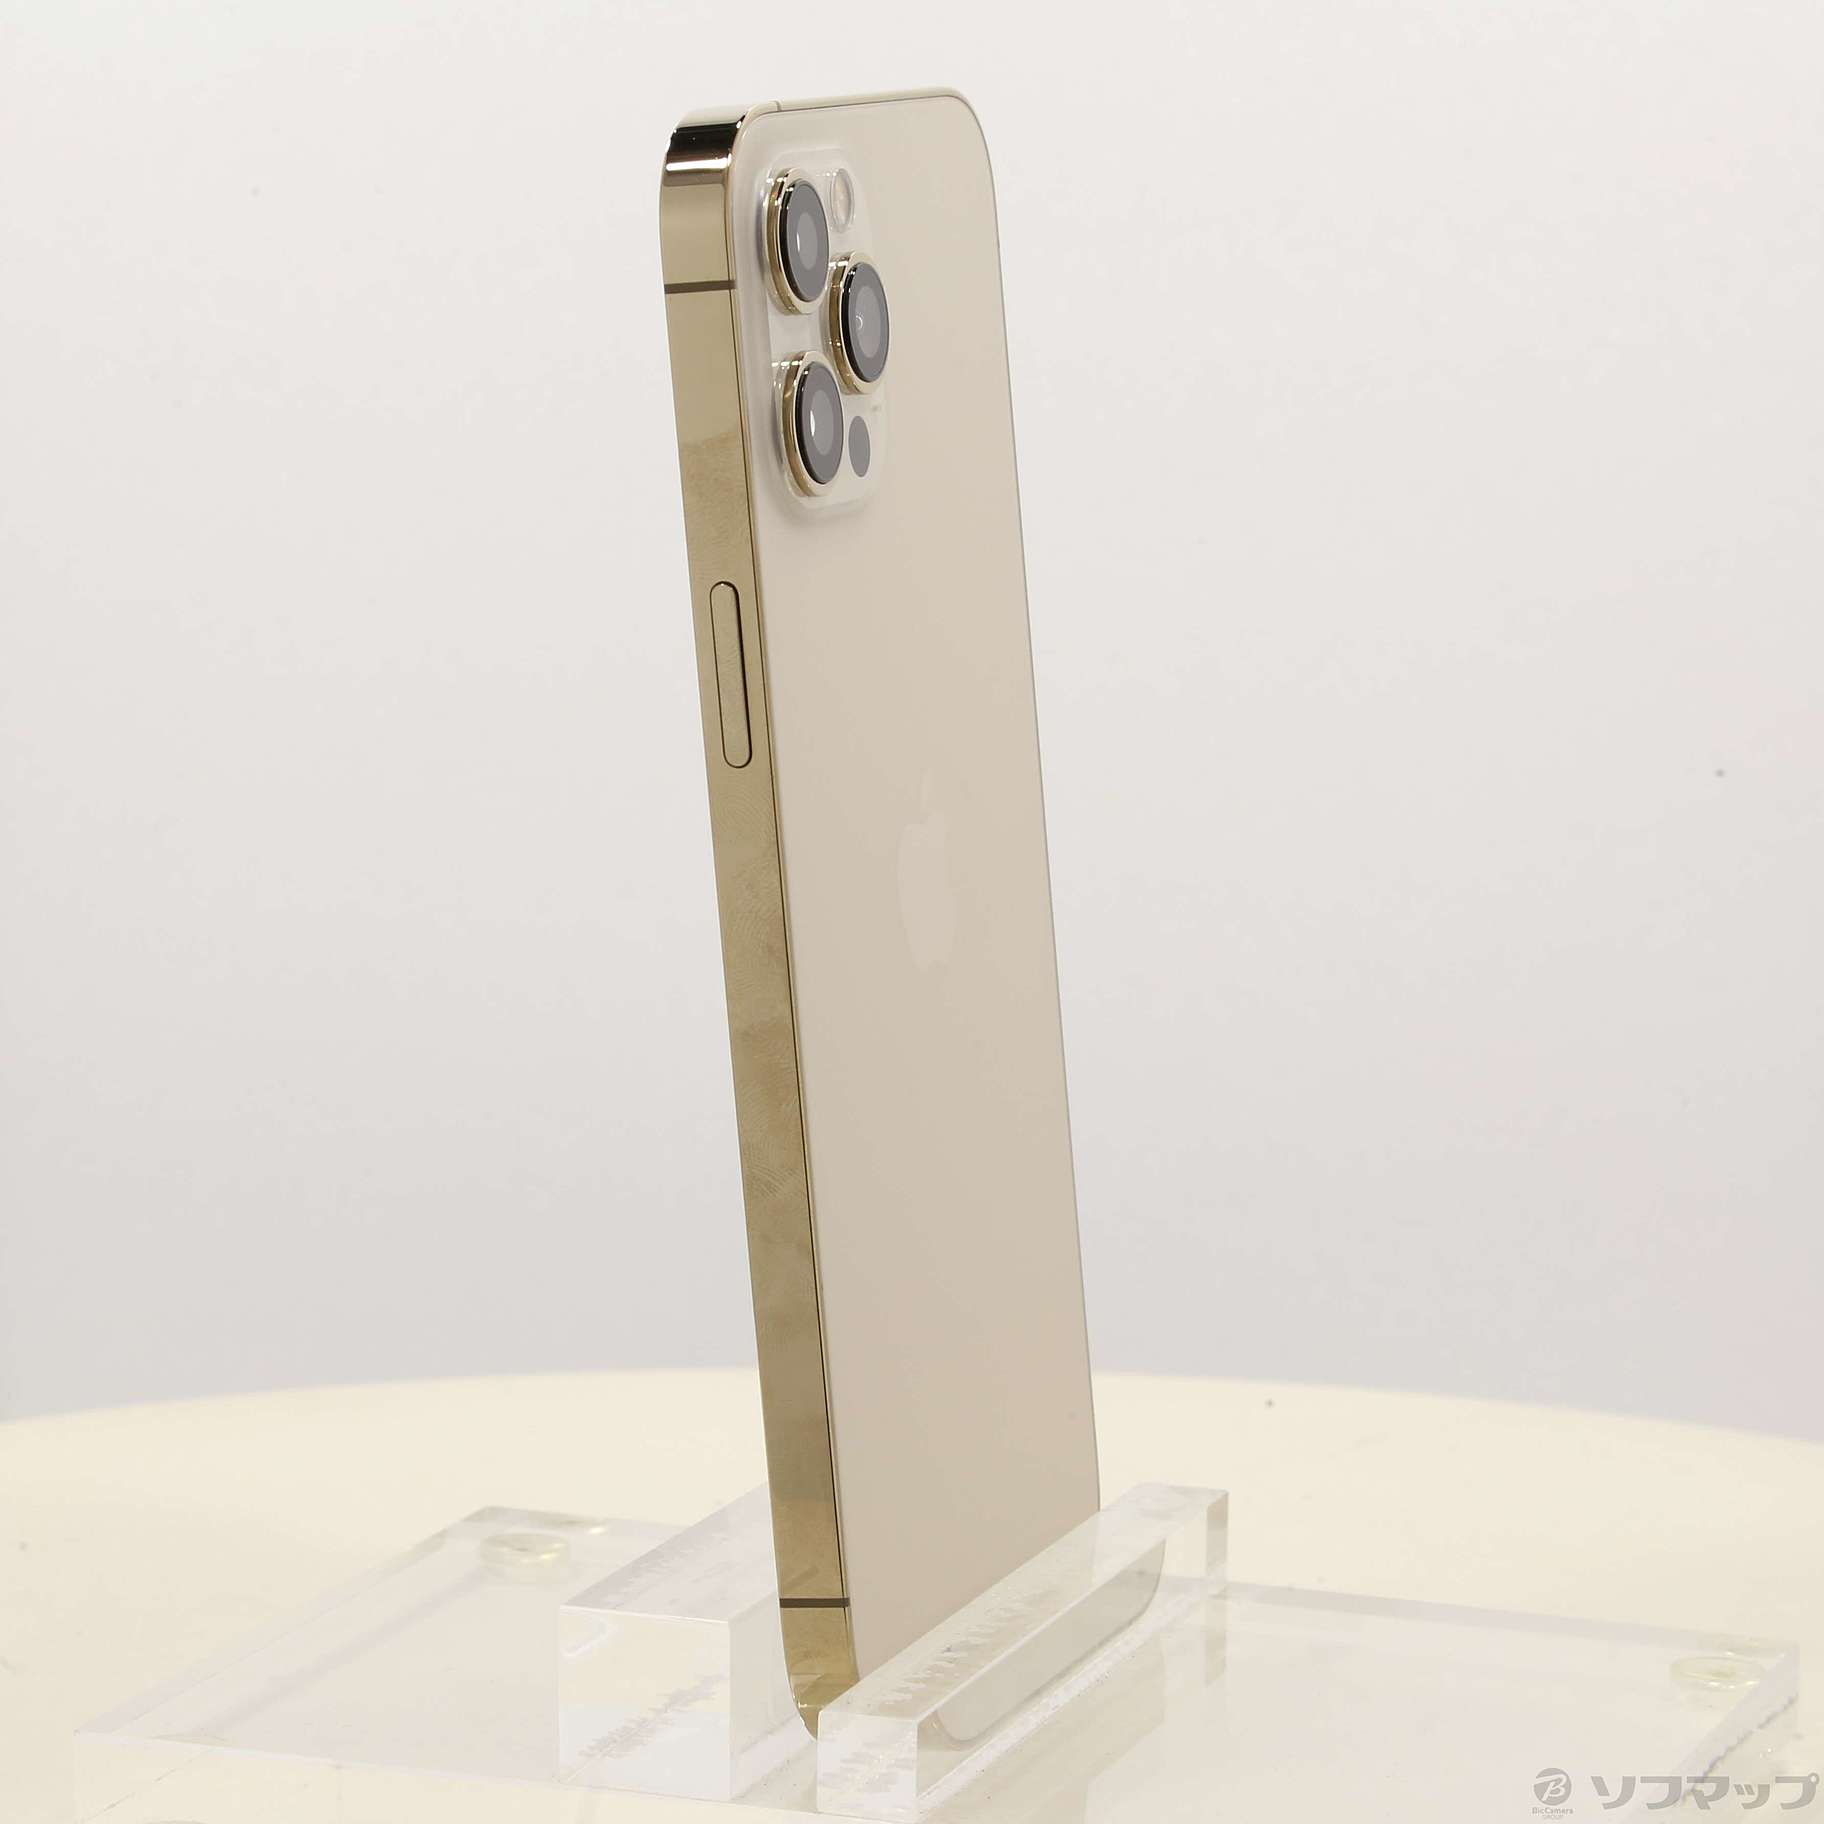 iPhone 12 pro ゴールド 256 GB Softbank-